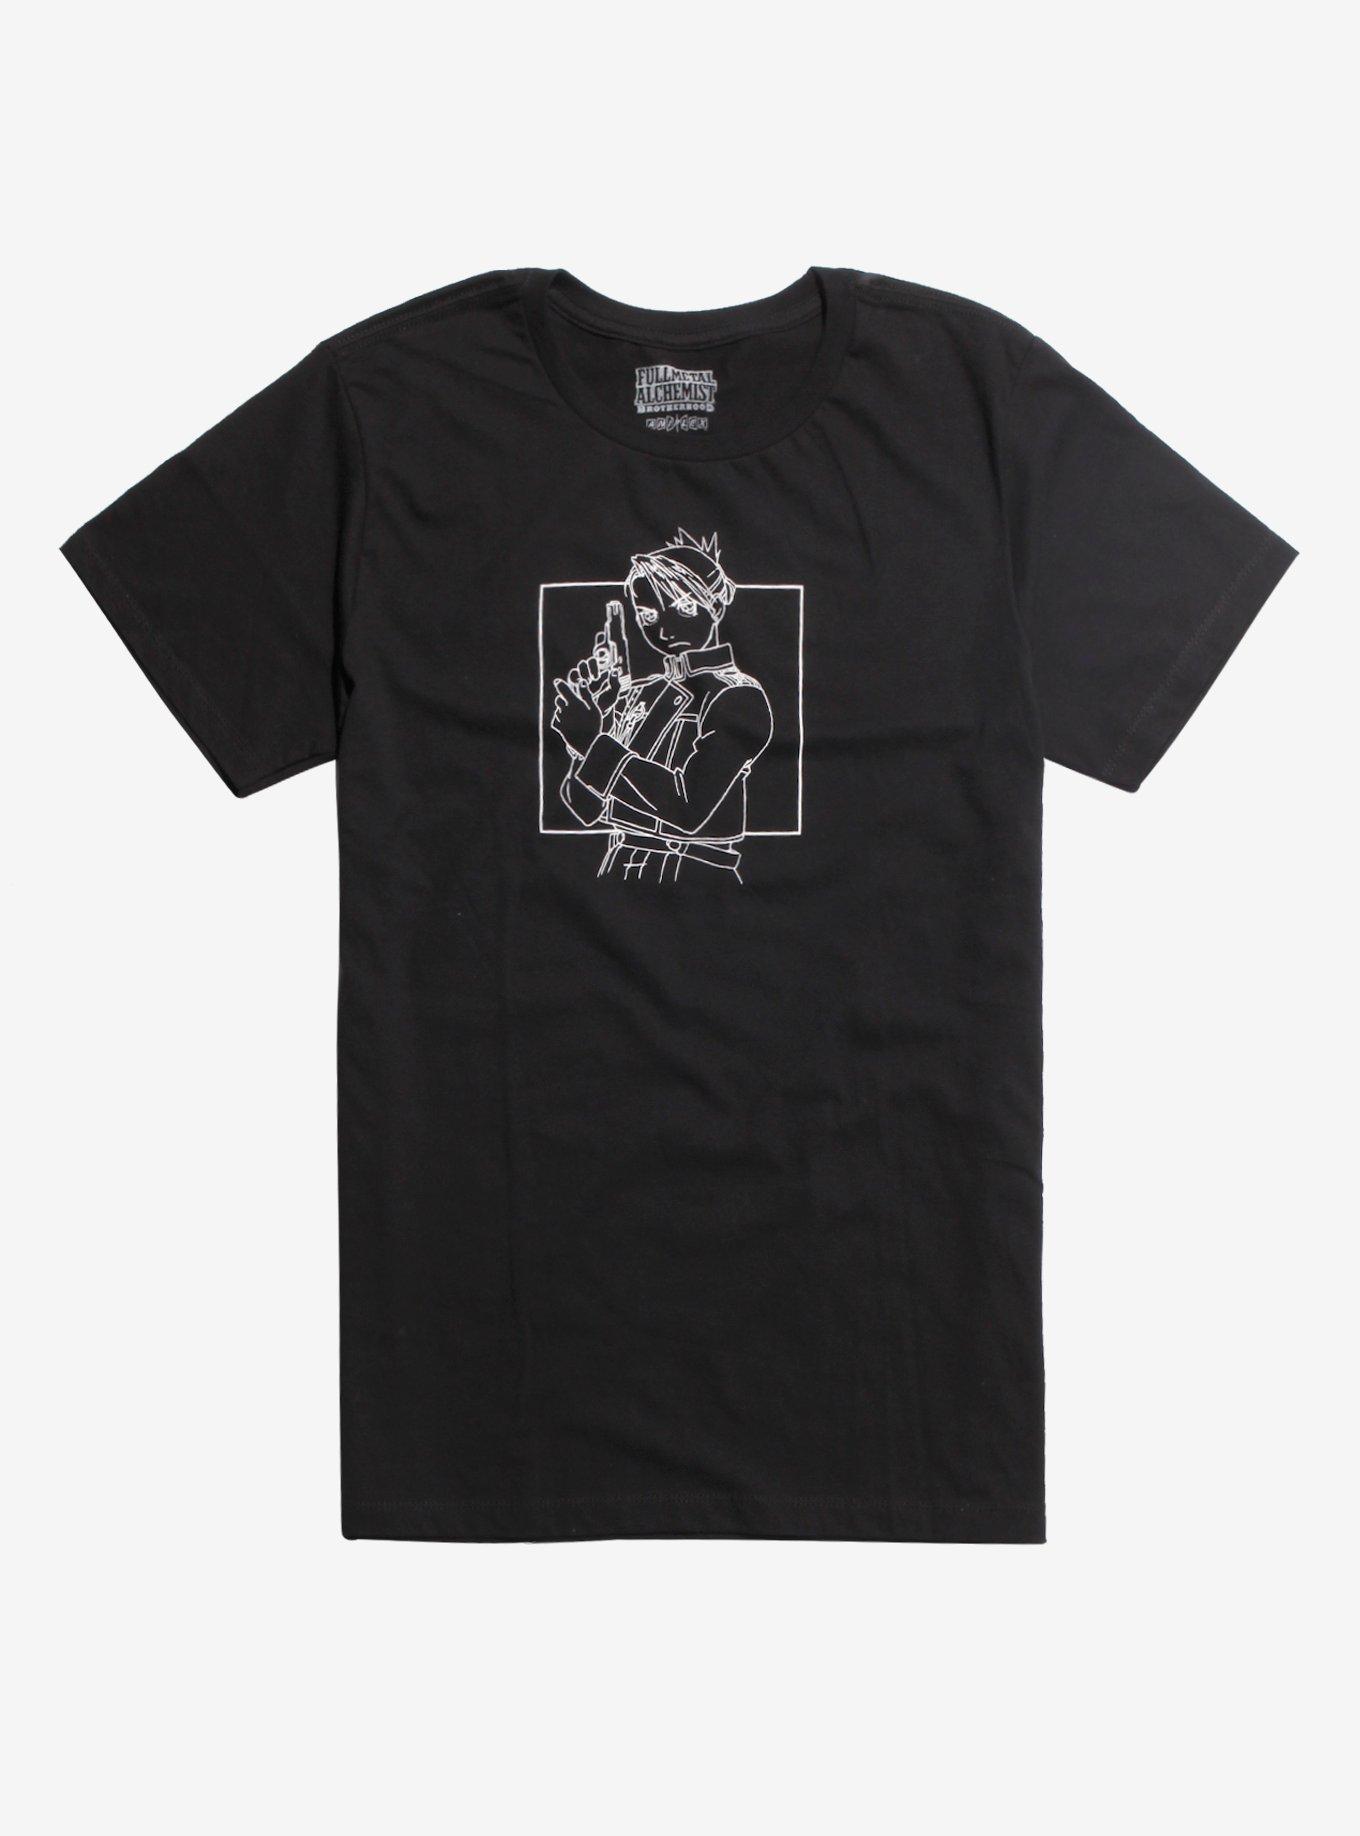 Fullmetal Alchemist Linework T-Shirt | Hot Topic